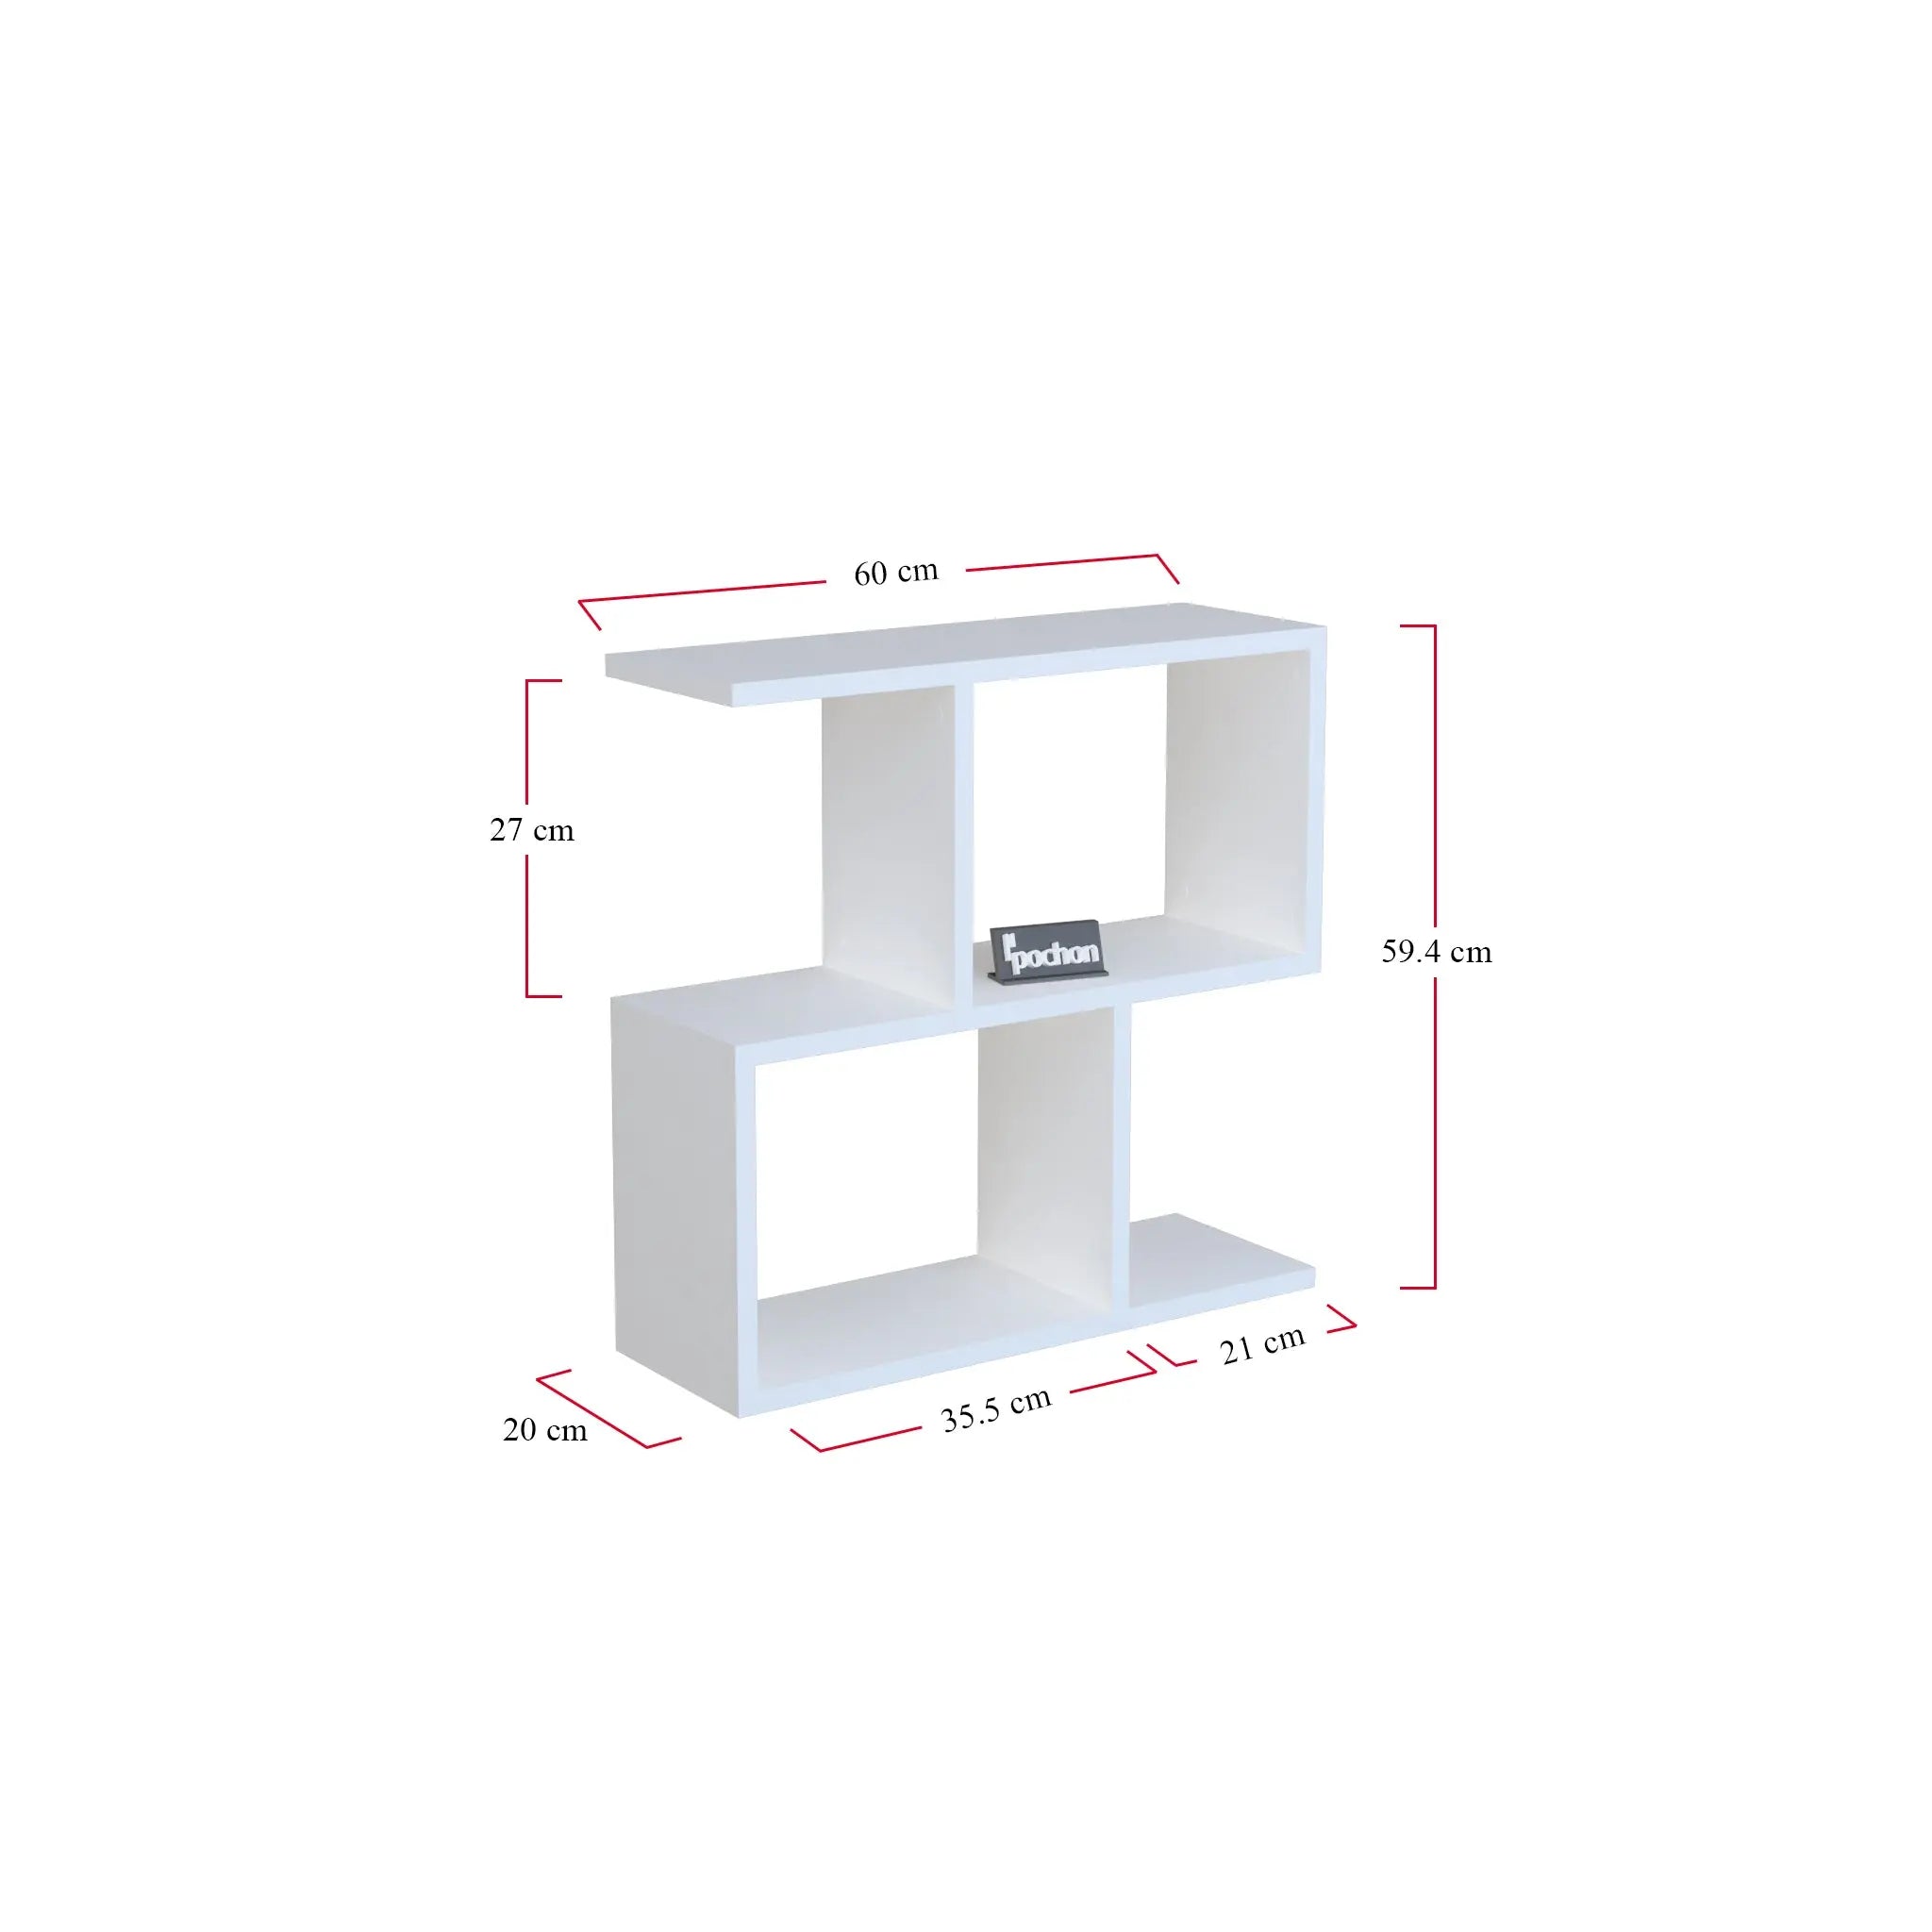 pochon-home-z-vorm-boekenkast-wit-60x60x20-bijzettafel-boekenplank